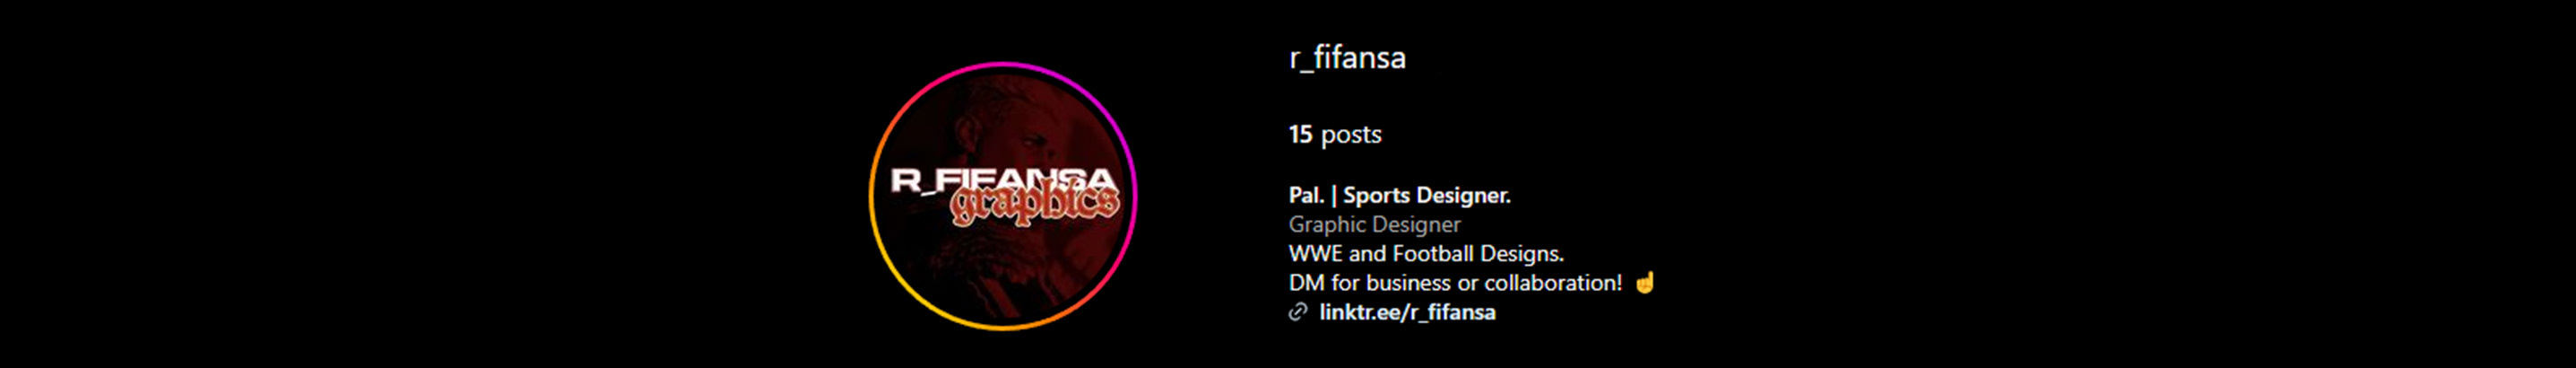 Naufal Rafifansa profil başlığı